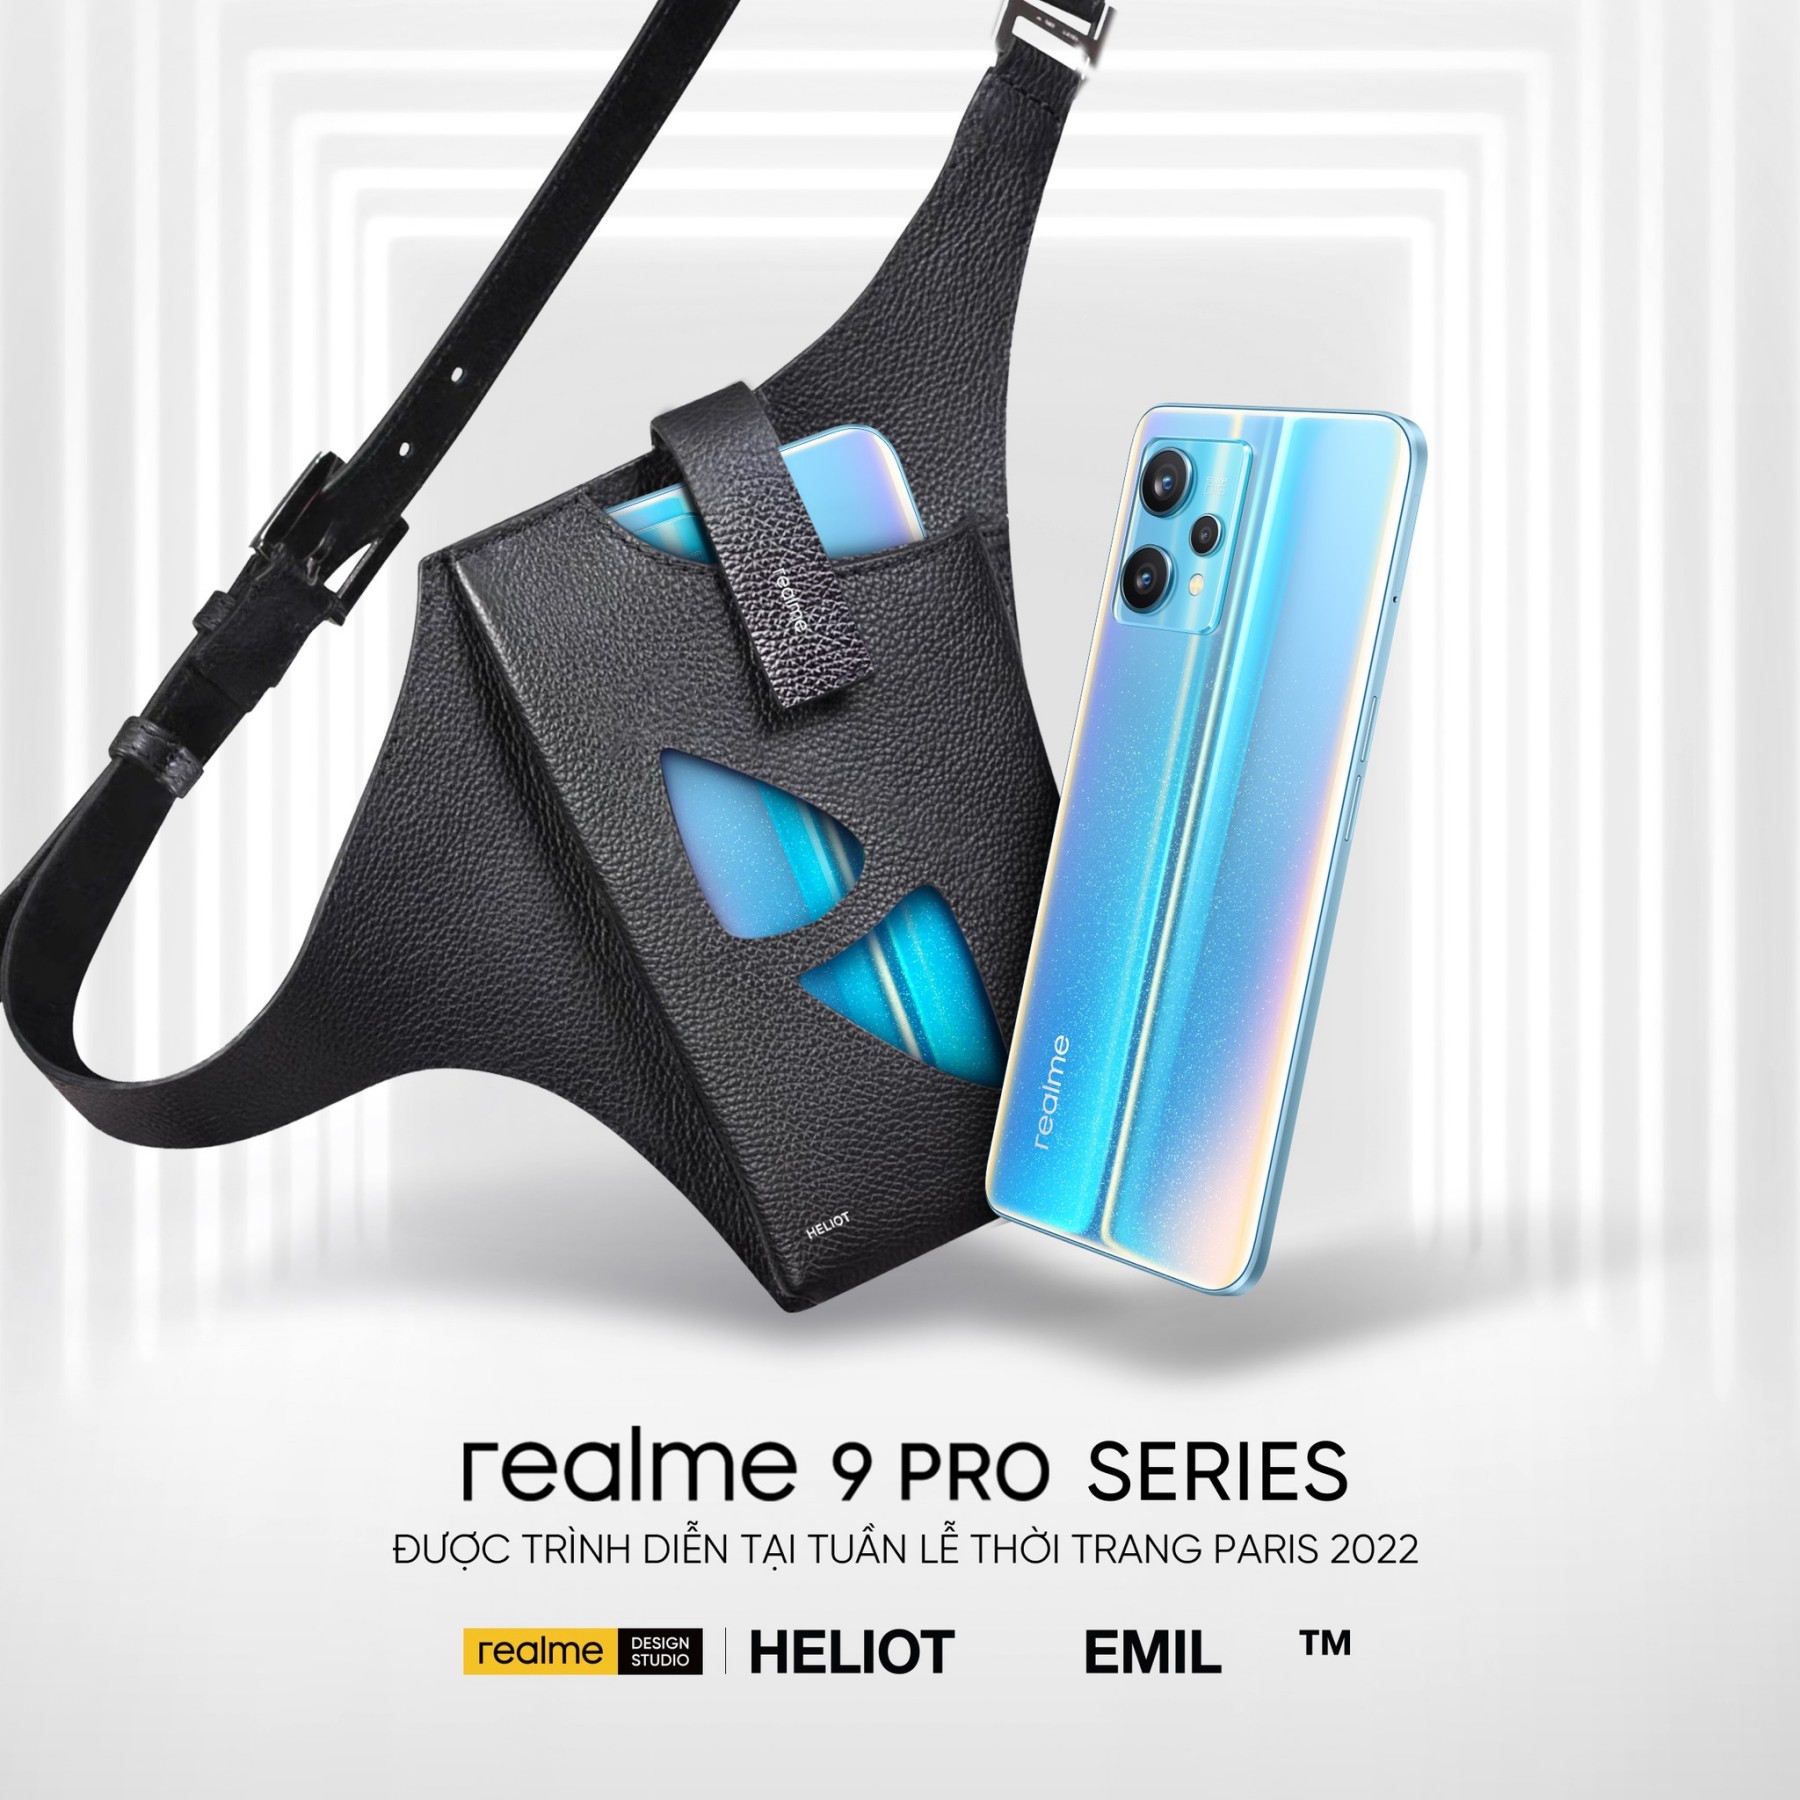 realme 9 Pro Series đã có giá bán chính thức đi kèm chương trình ưu đãi hấp dẫn cho người dùng Việt